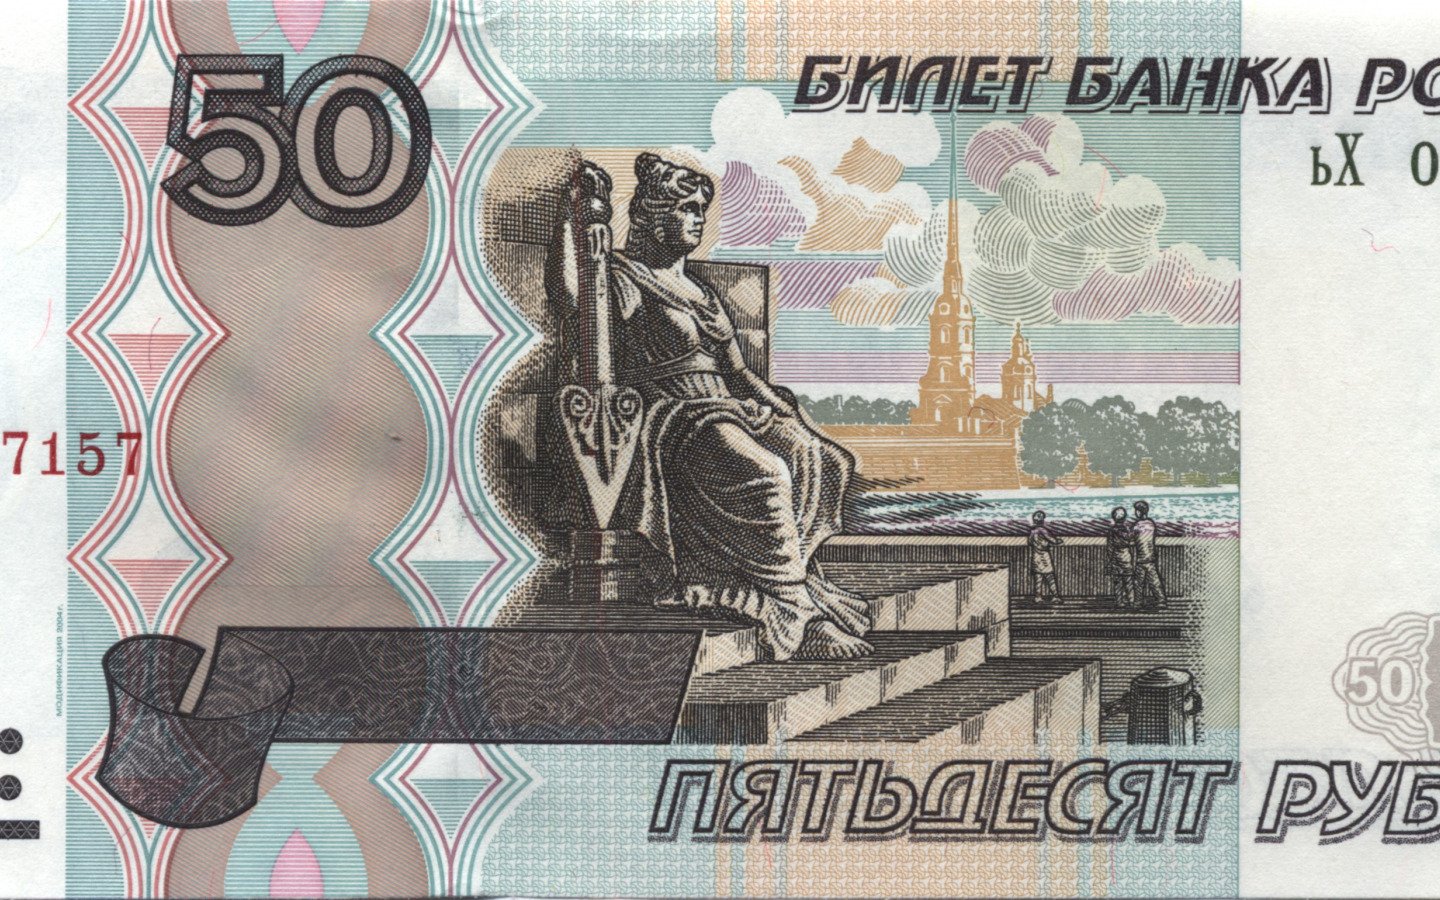 Пятьдесят не меньше. 50 Рублей. Купюра 50 рублей. Пятьдесят рублей купюра. Банкнота 50 рублей.